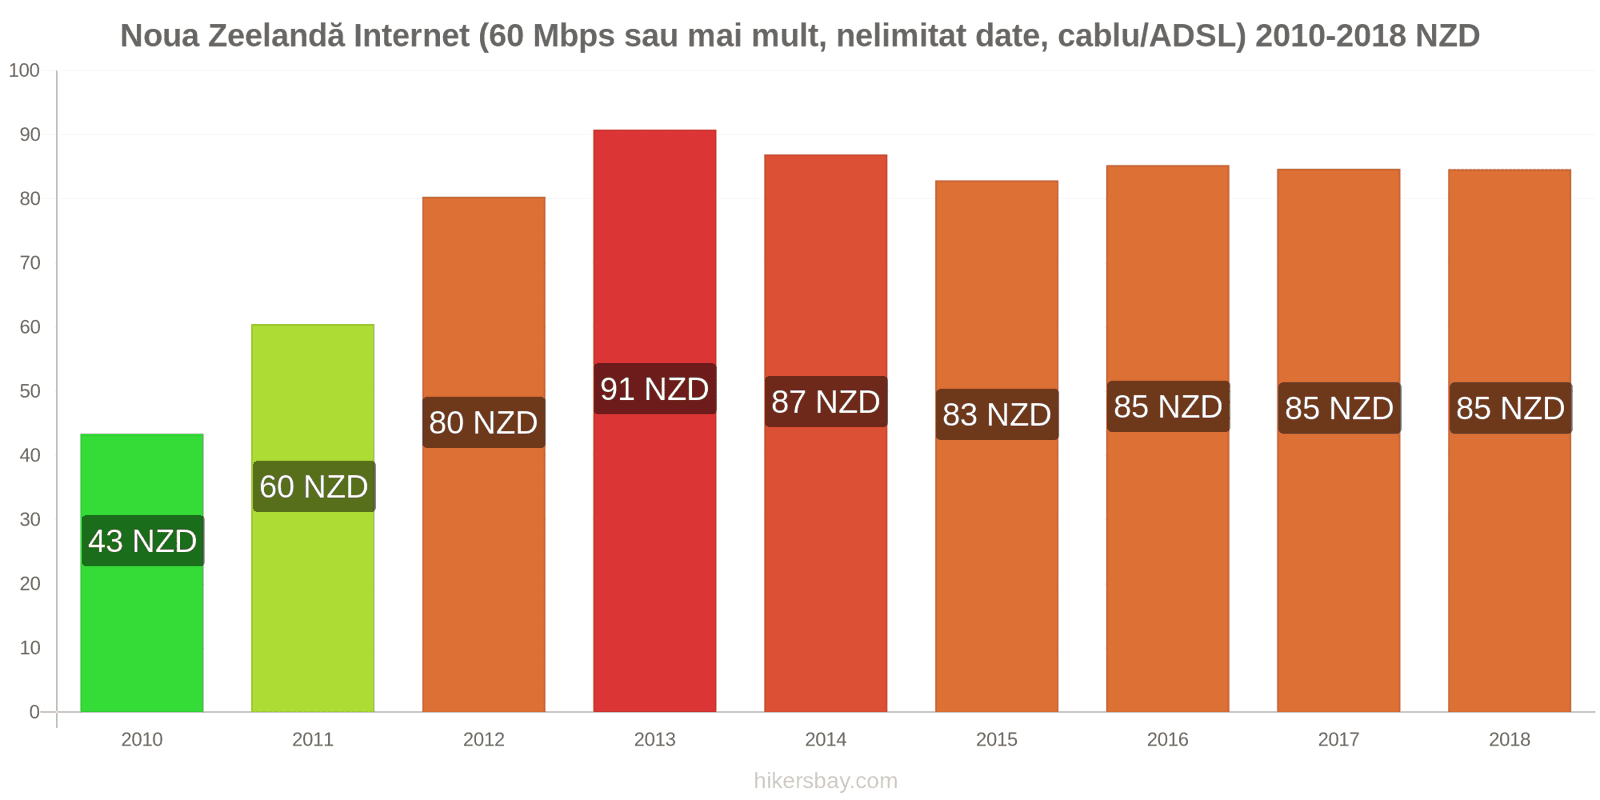 Noua Zeelandă schimbări de prețuri Internet (60 Mbps sau mai mult, date nelimitate, cablu/ADSL) hikersbay.com